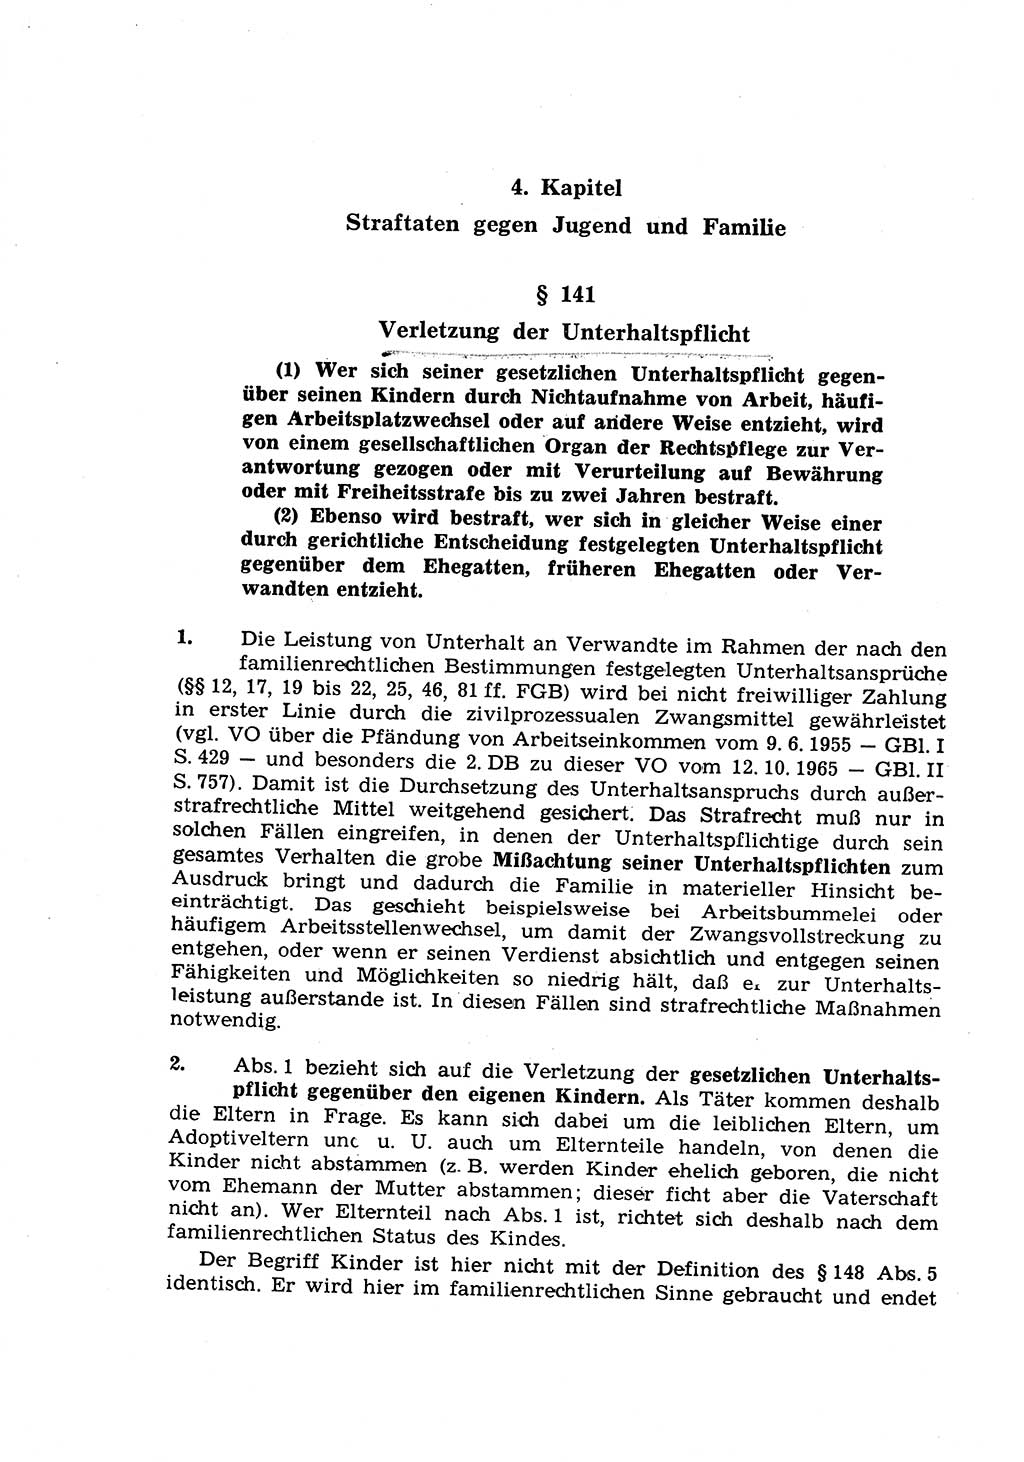 Strafrecht der Deutschen Demokratischen Republik (DDR), Lehrkommentar zum Strafgesetzbuch (StGB), Besonderer Teil 1970, Seite 114 (Strafr. DDR Lehrkomm. StGB BT 1970, S. 114)